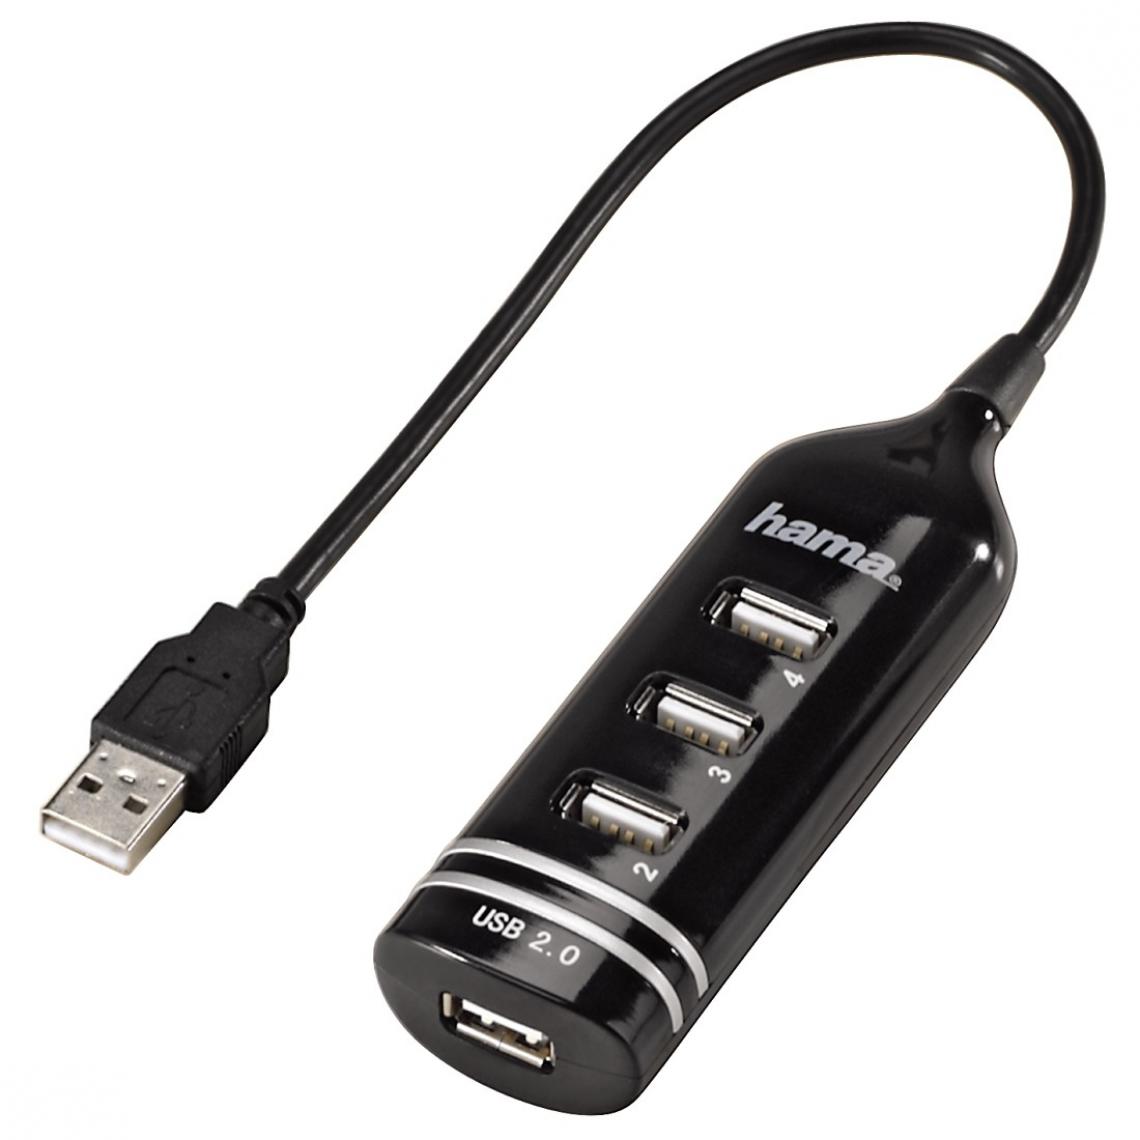 Hama - Hub USB 2.0, 4 ports, alimention par bus, Noir - Hub